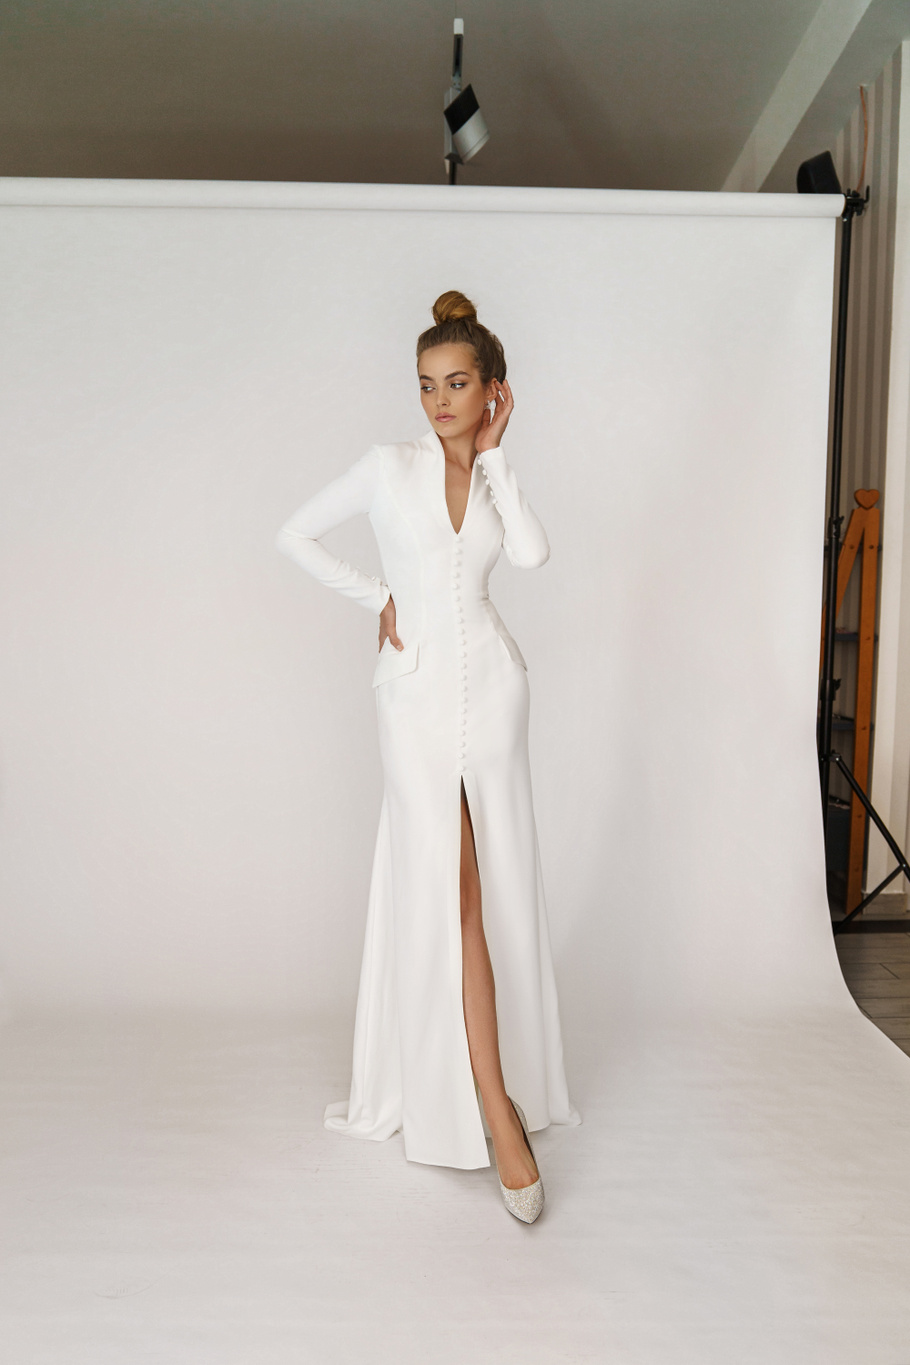 Свадебное платье «Олсен» Марта — купить в Краснодаре платье Олсен из коллекции 2021 года